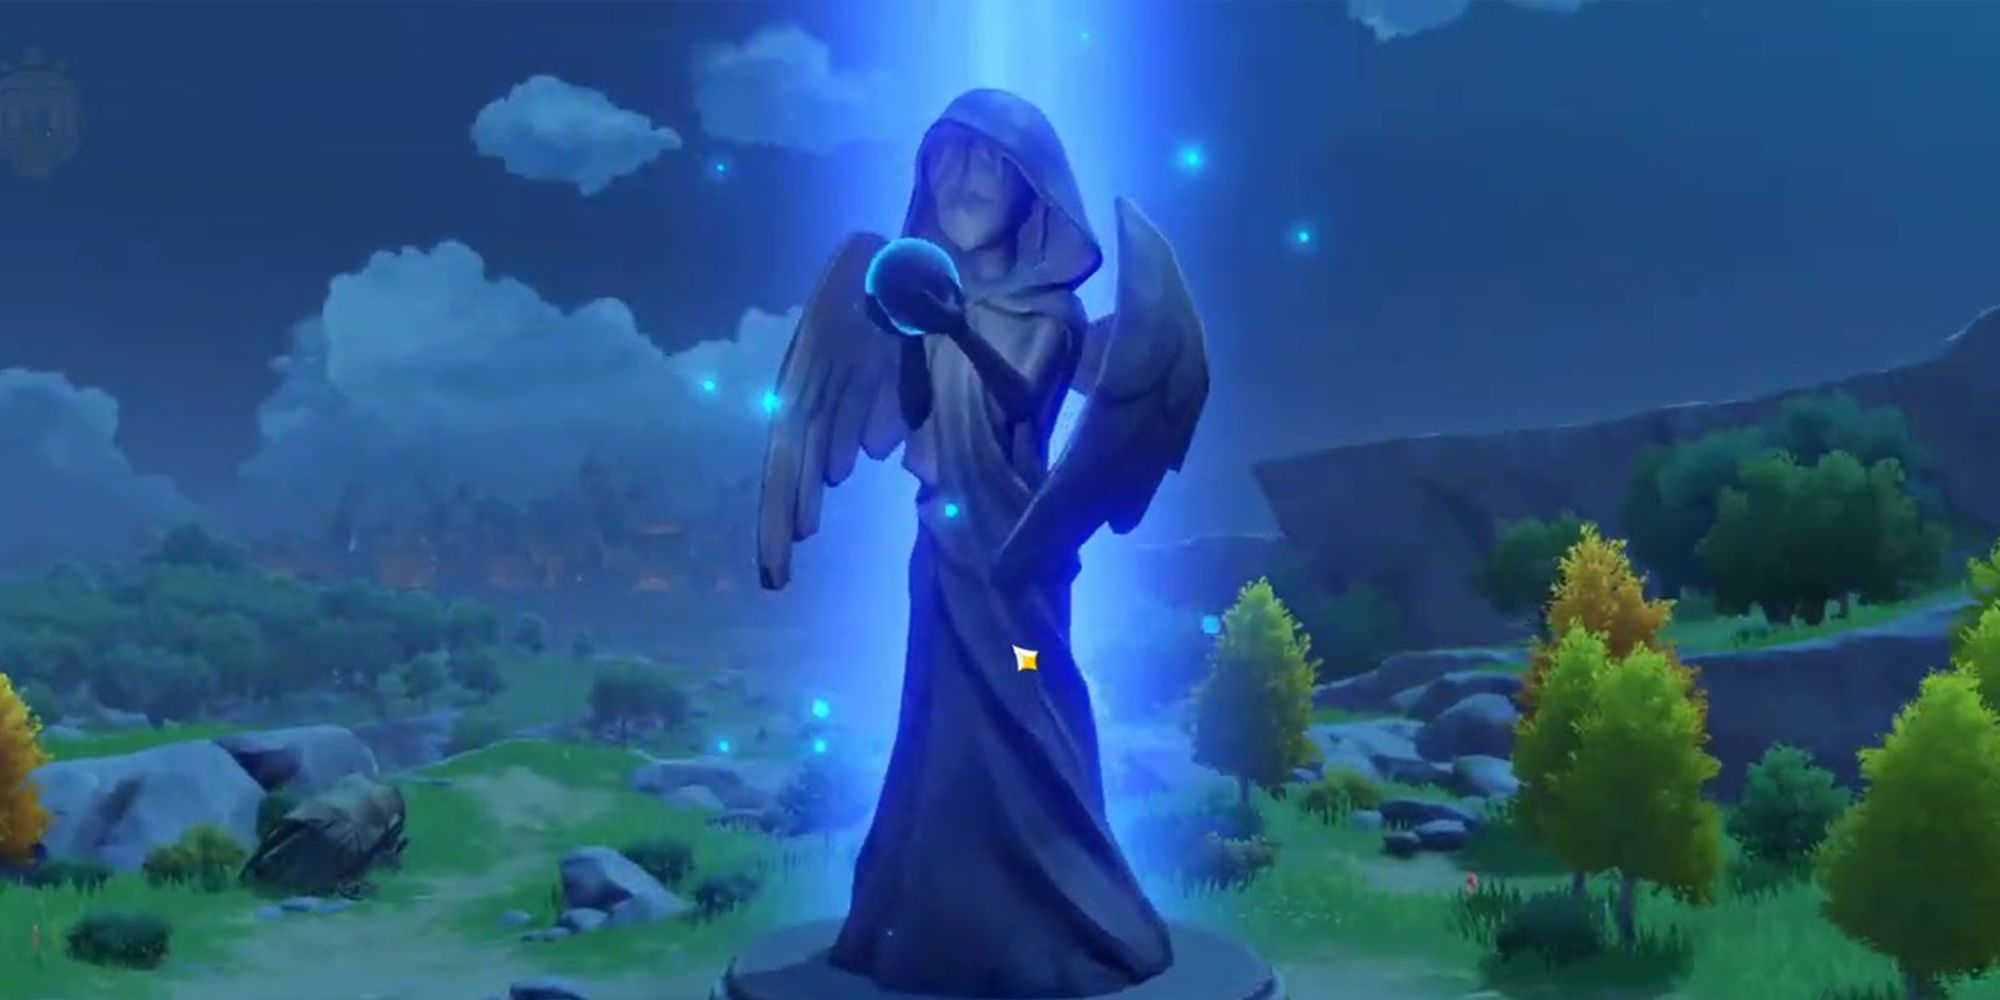 Estátua dos Sete do Genshin Impact em Mondstadt.  Atrás dela há um campo gramado e um céu noturno azul escuro com algumas nuvens.  A estátua é a figura de uma pequena pessoa vestindo um manto e segurando um orbe.  A estátua tem uma iluminação de aura azul ao seu redor.